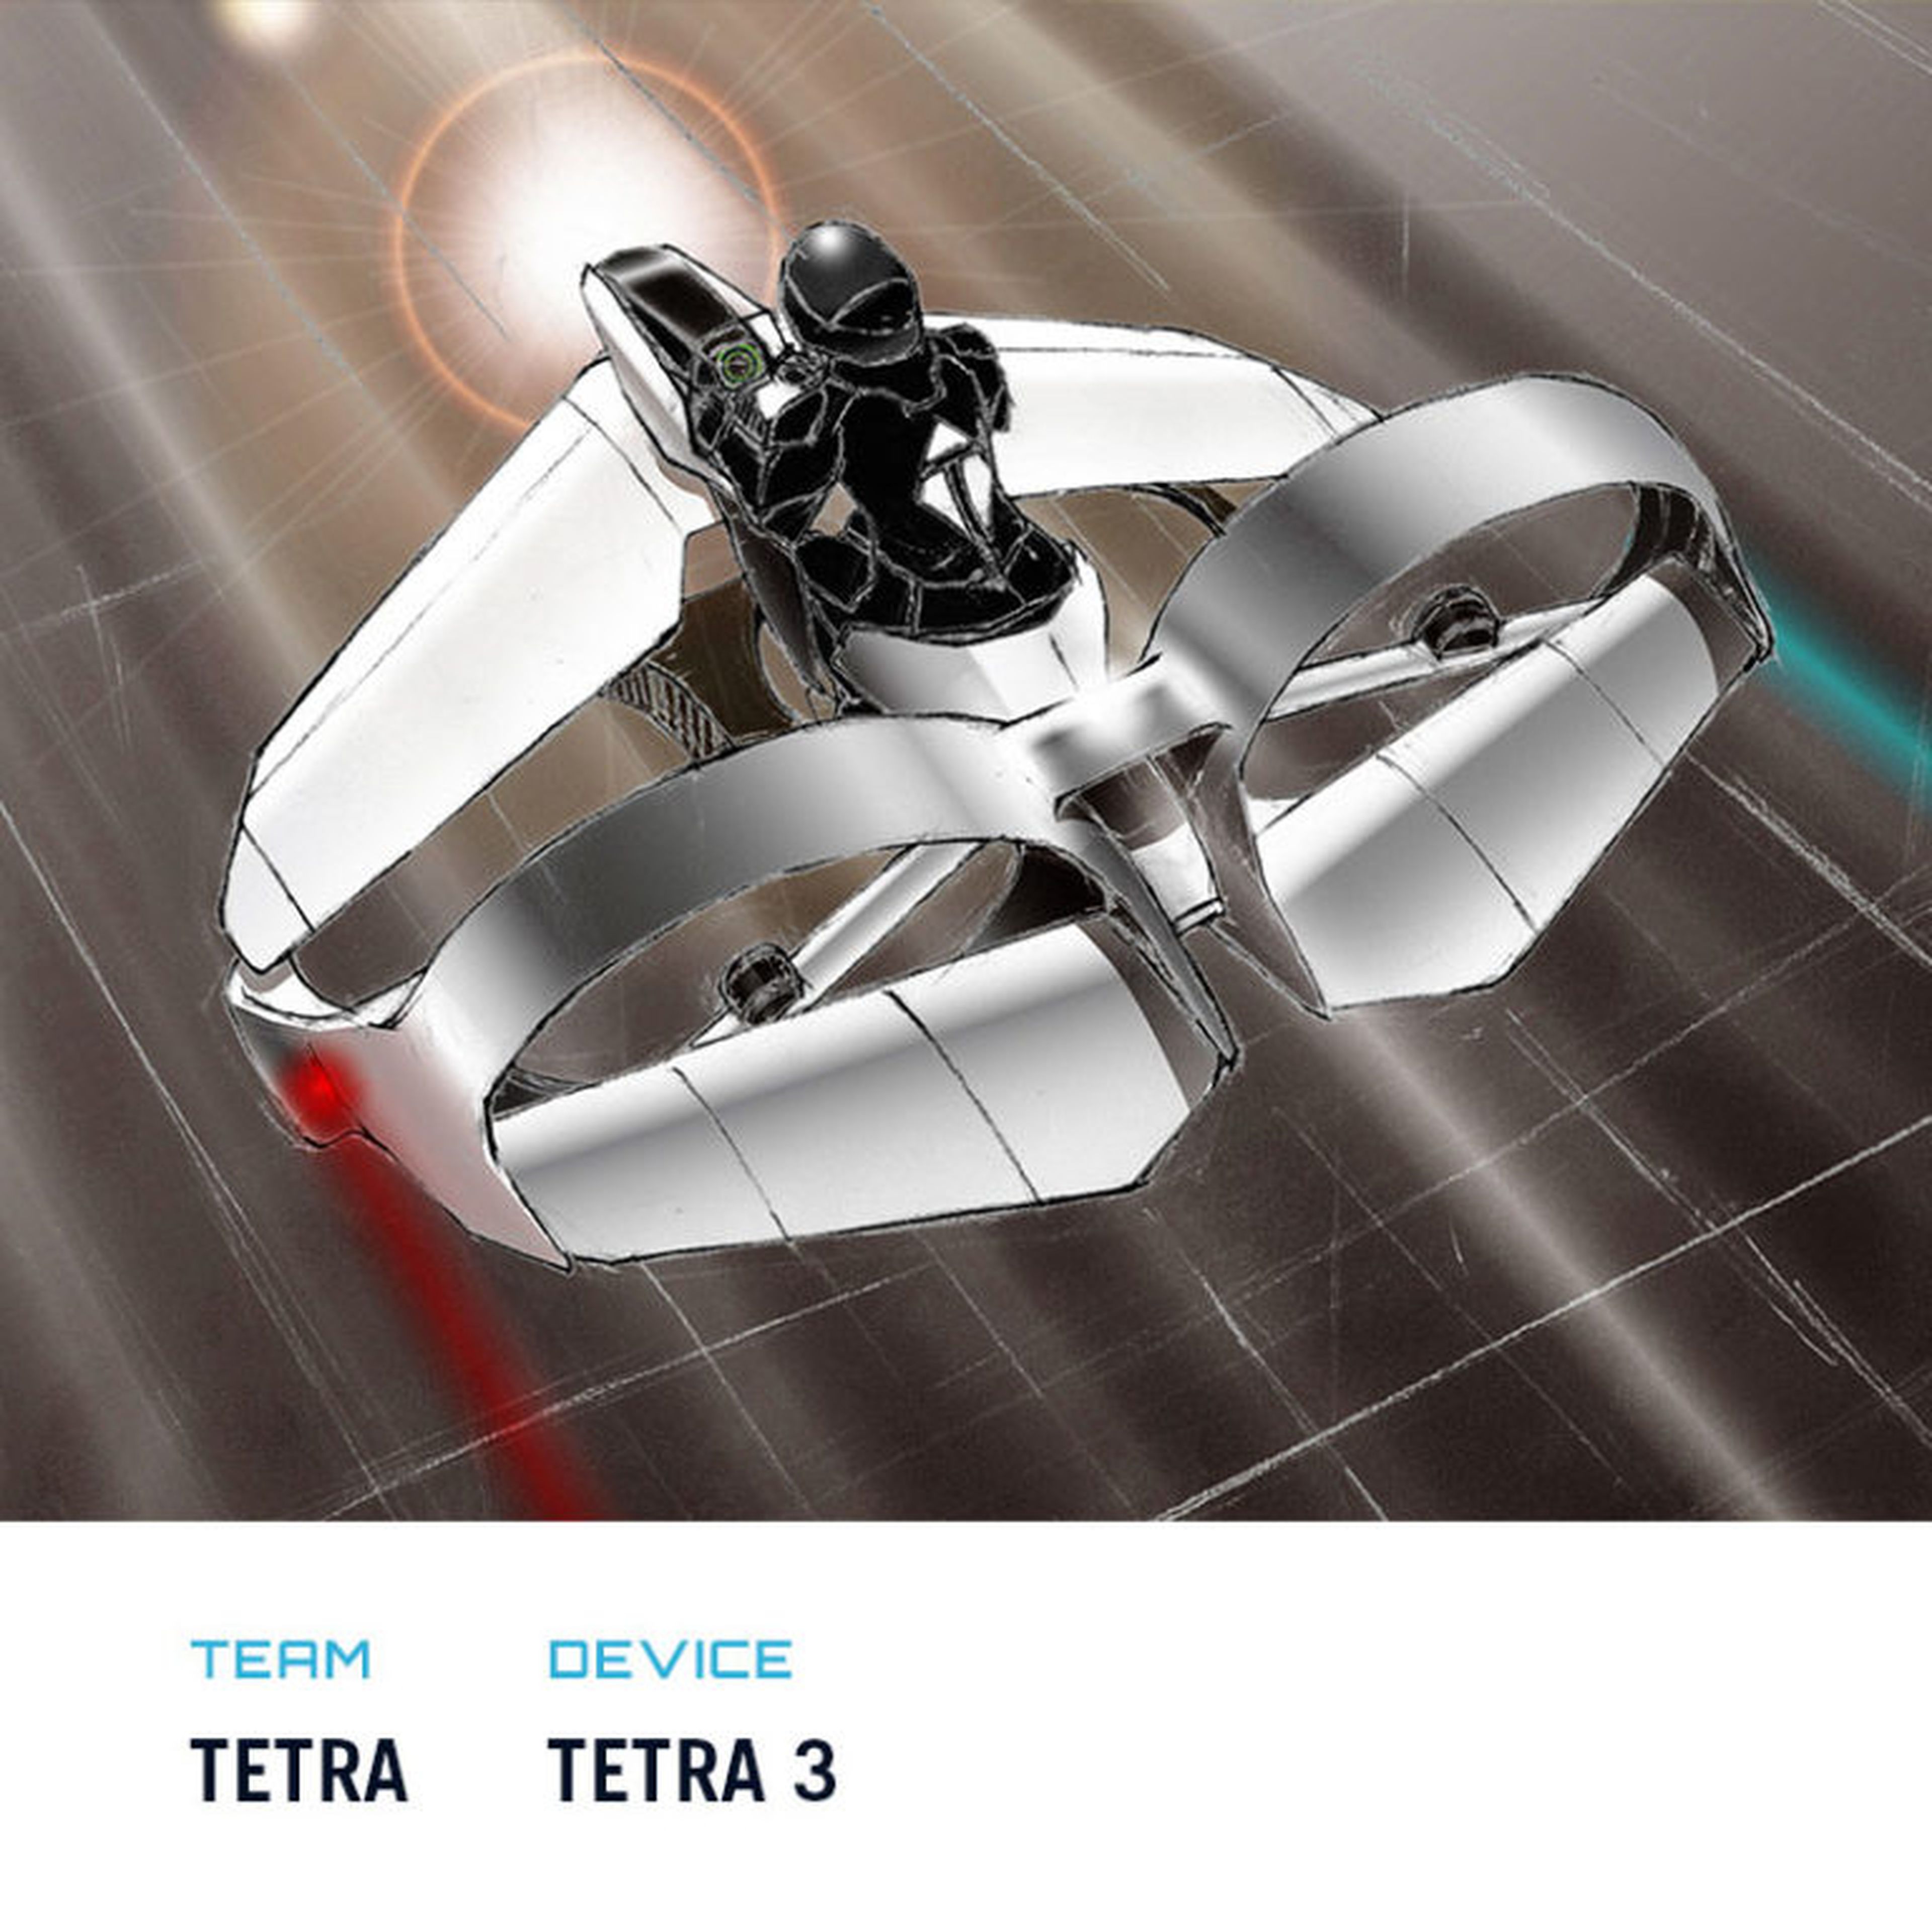 Tetra 3